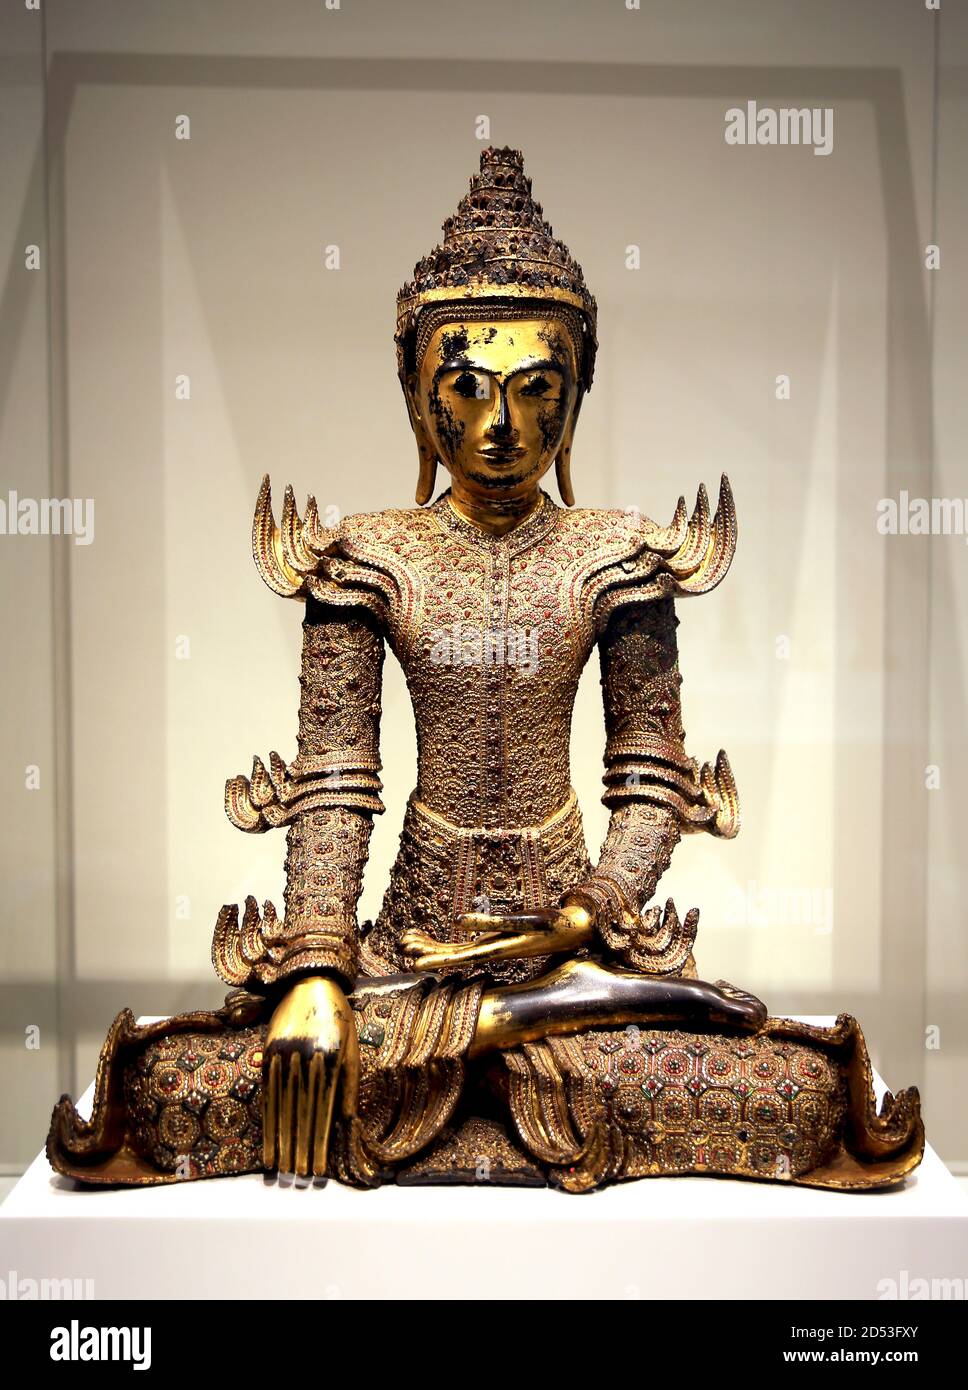 Statua di Buddha incoronata. xix sec. Birmania (Myanmar). Legno laccato oro con inserto in vetro. Museo delle culture del mondo. Barcellona. Spagna. Foto Stock